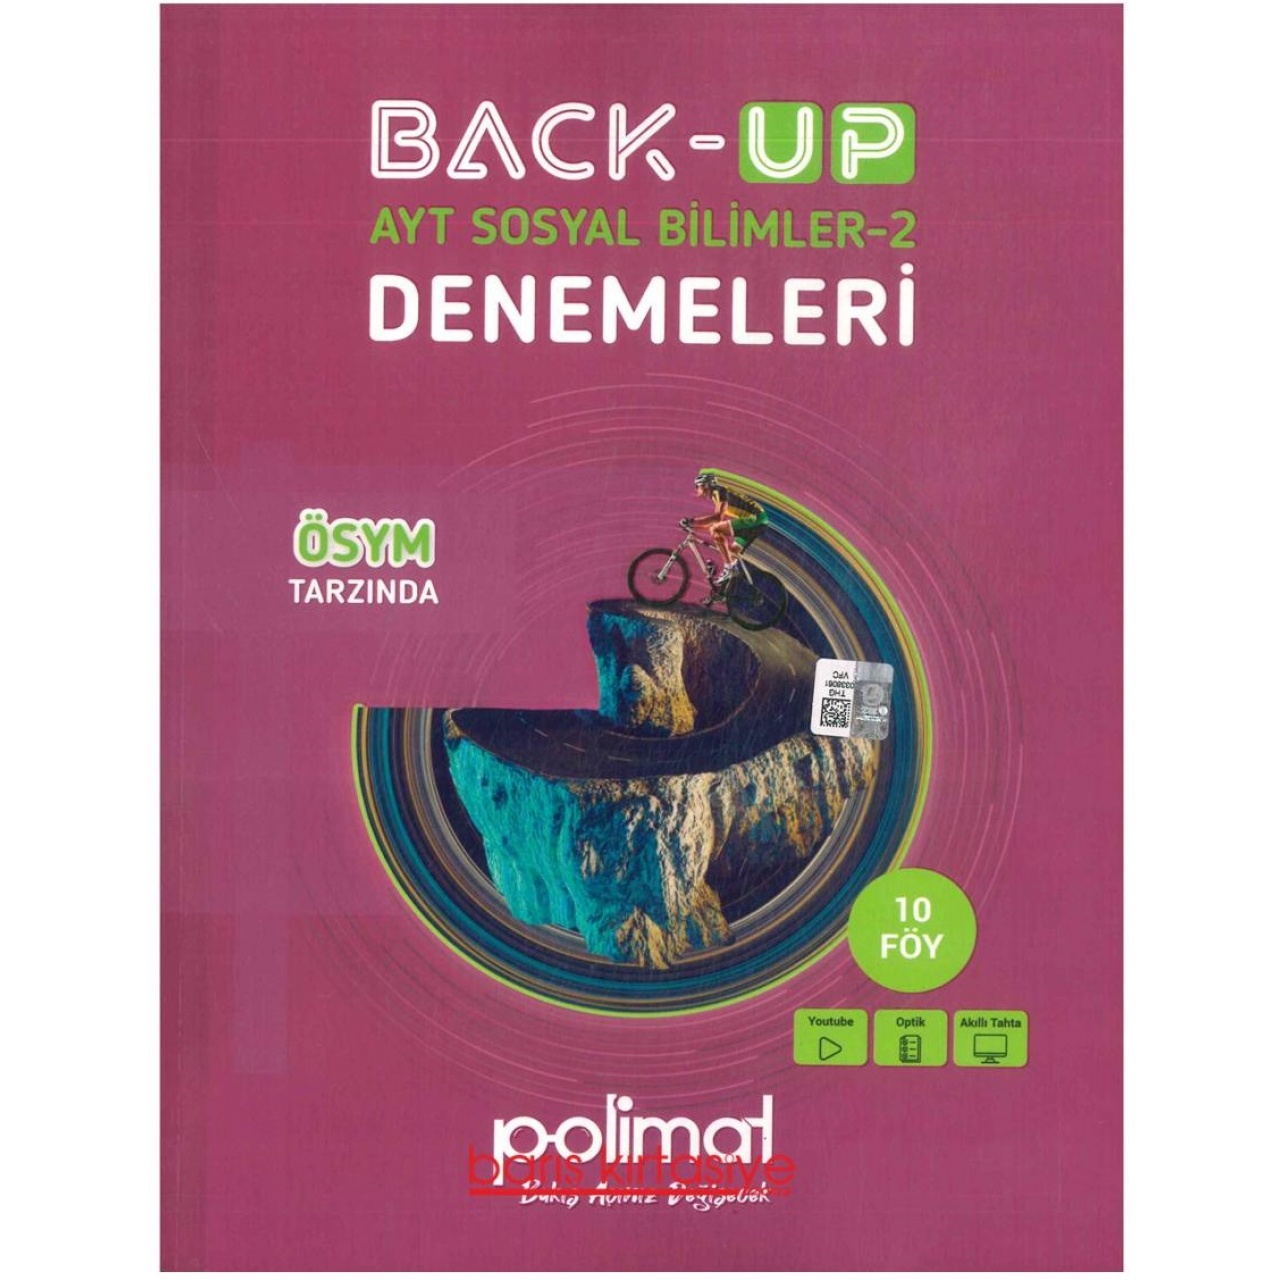 Back-Up AYT Sosyal Bilimler-2 Denemeleri Polimat Yayınları